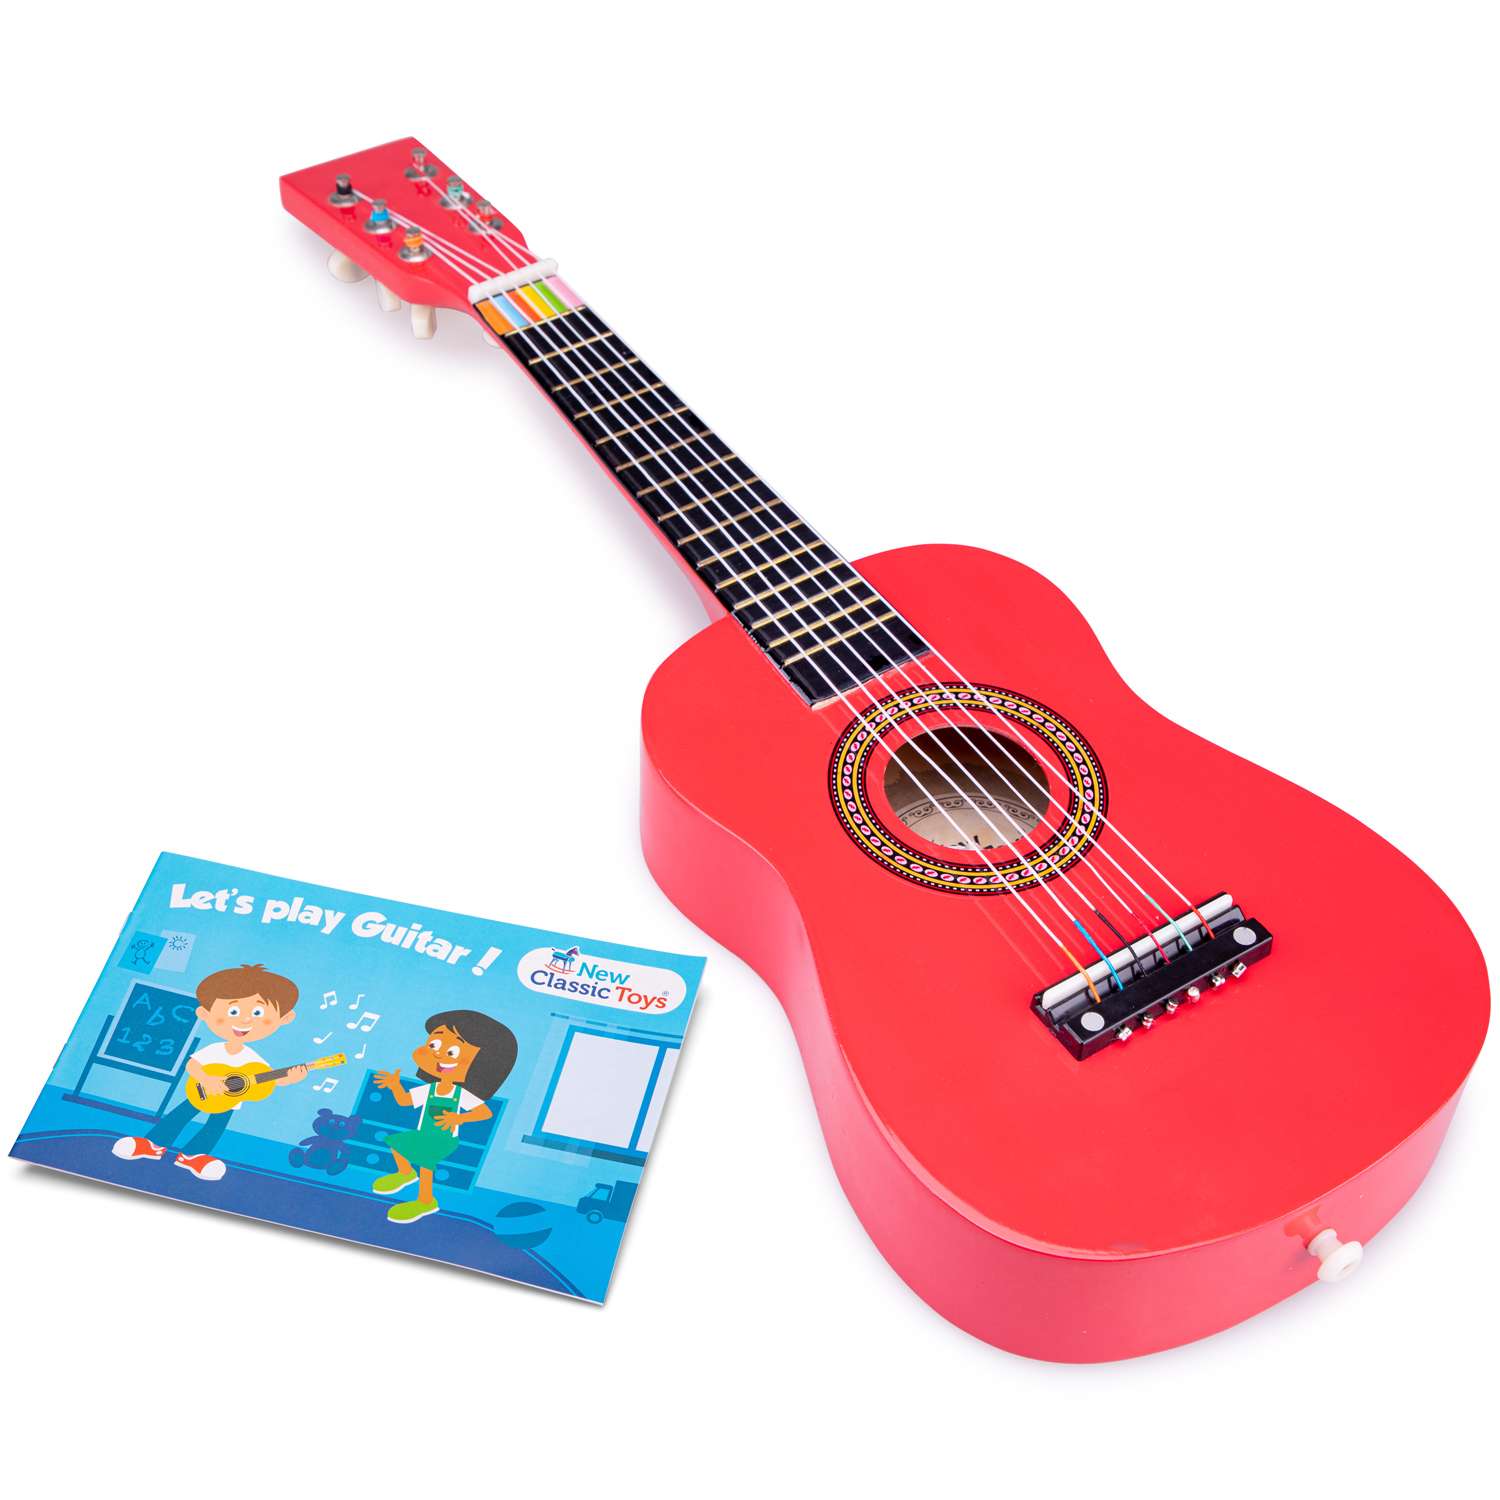 Гитара New Classic Toys 60 см красная 10341 - фото 2